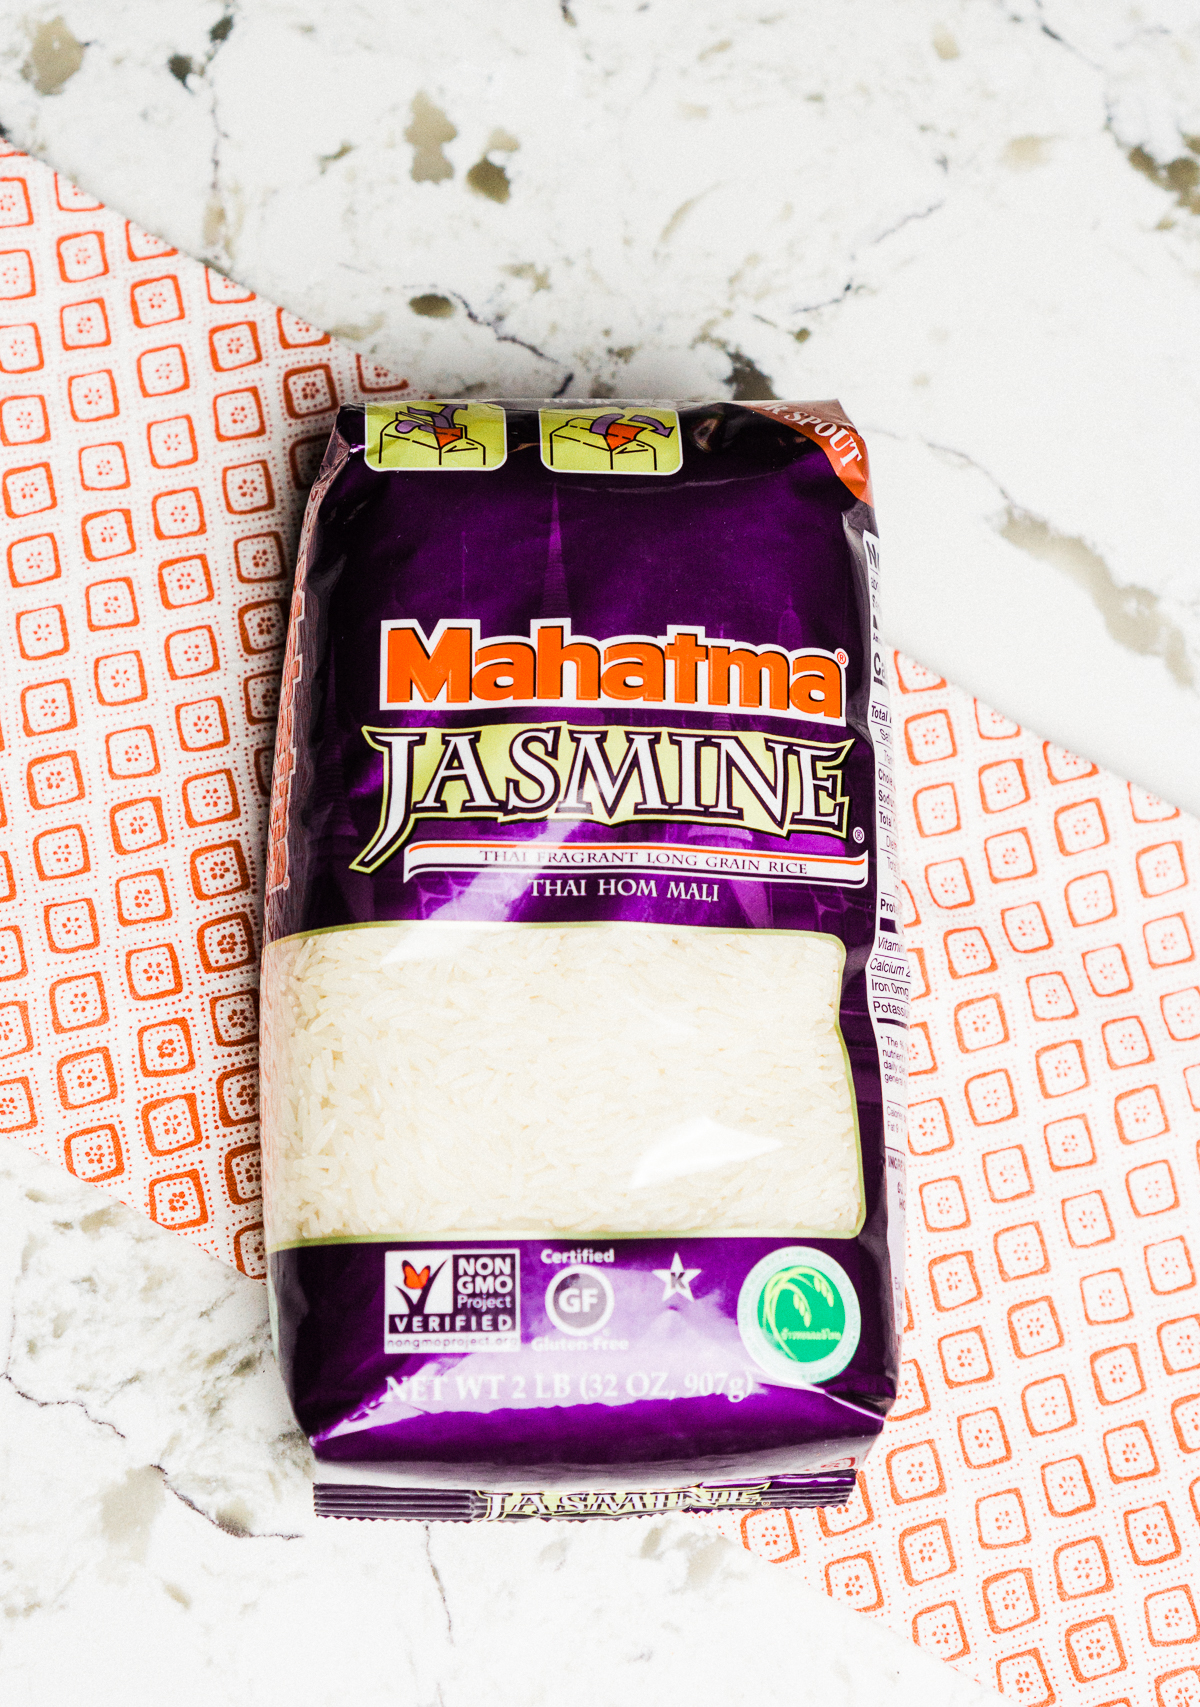 Mahatma Jasmine rice for Cheesy Rice & Black Bean Dip